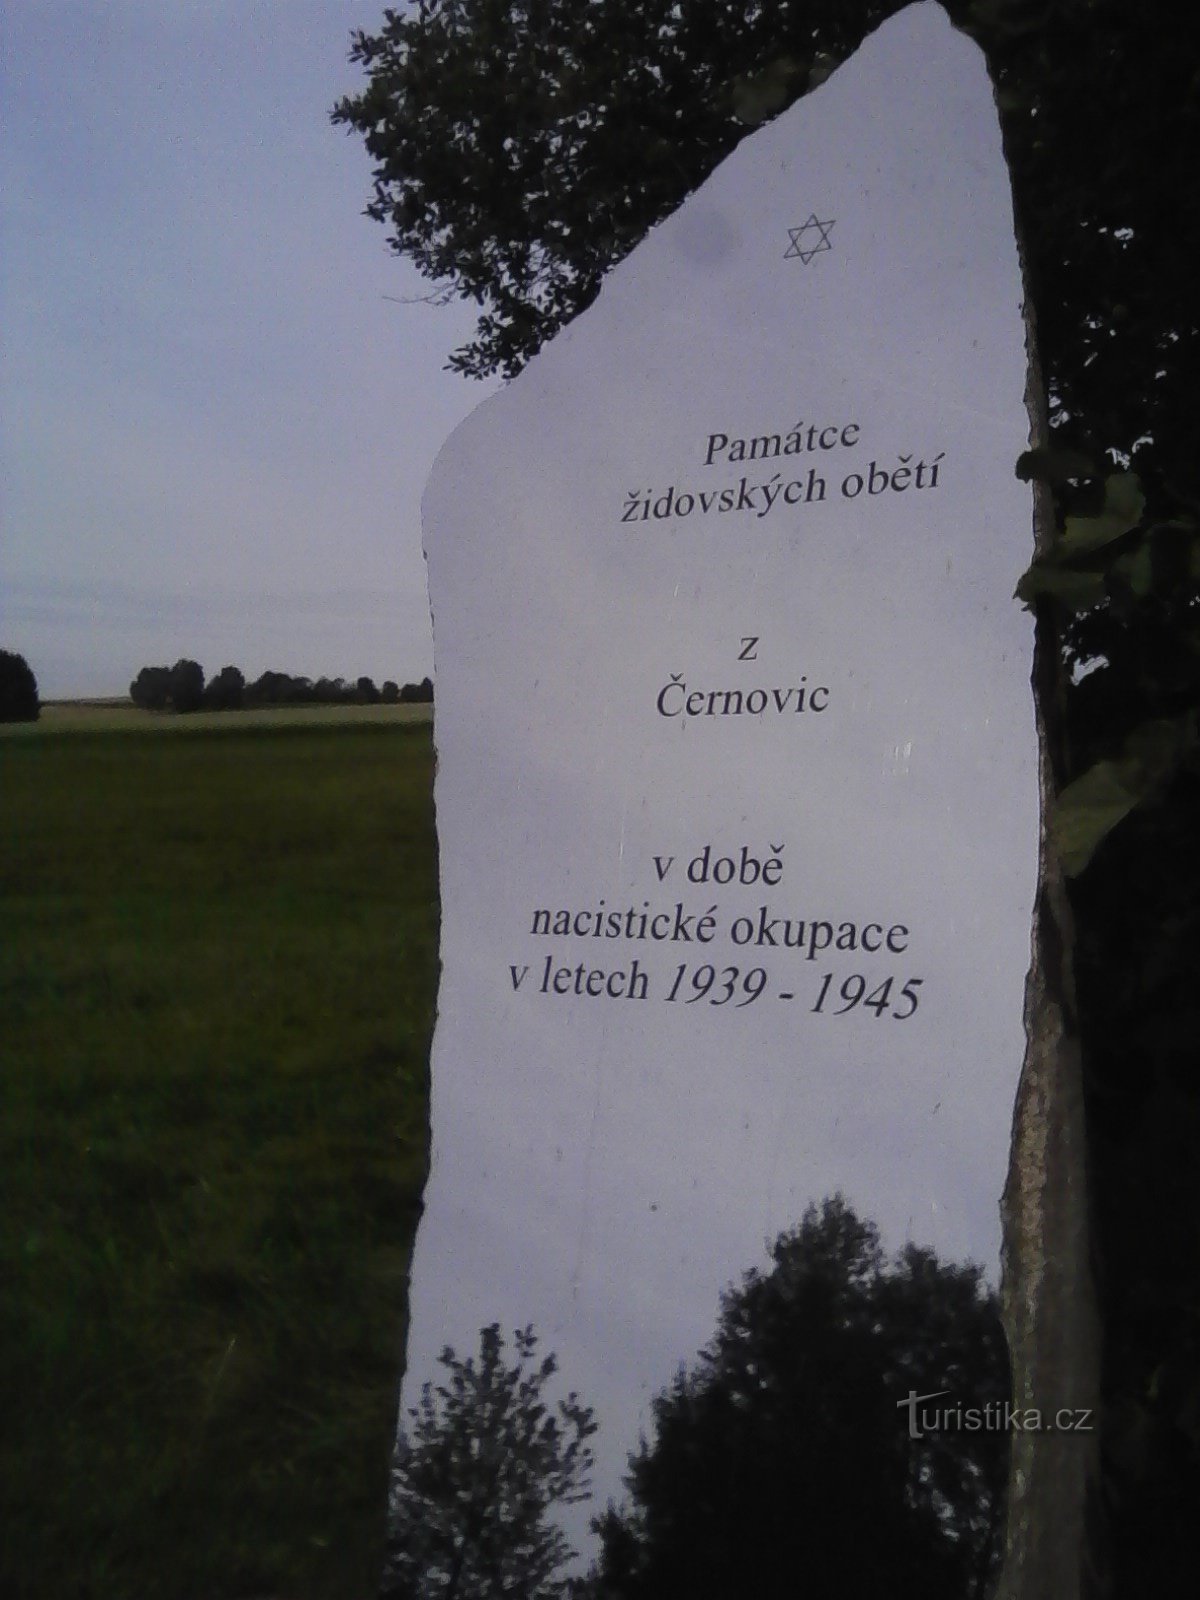 1. O caminho para o cemitério judeu em Černovice